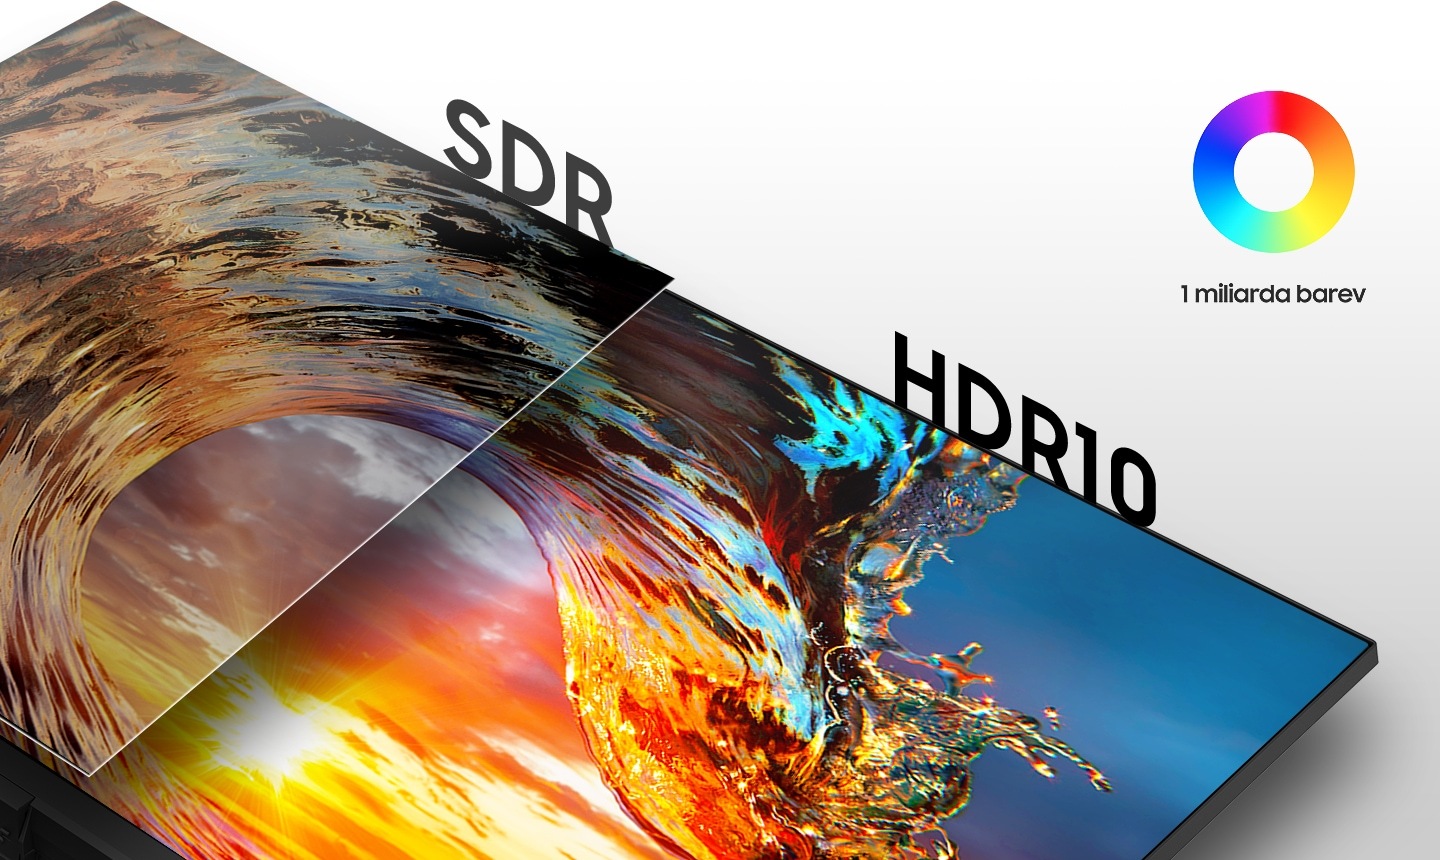 Porovnání obrazovky SDR vlevo a obrazovky HDR10 vpravo. Vpravo nahoře je ikona 1 miliardy barev.